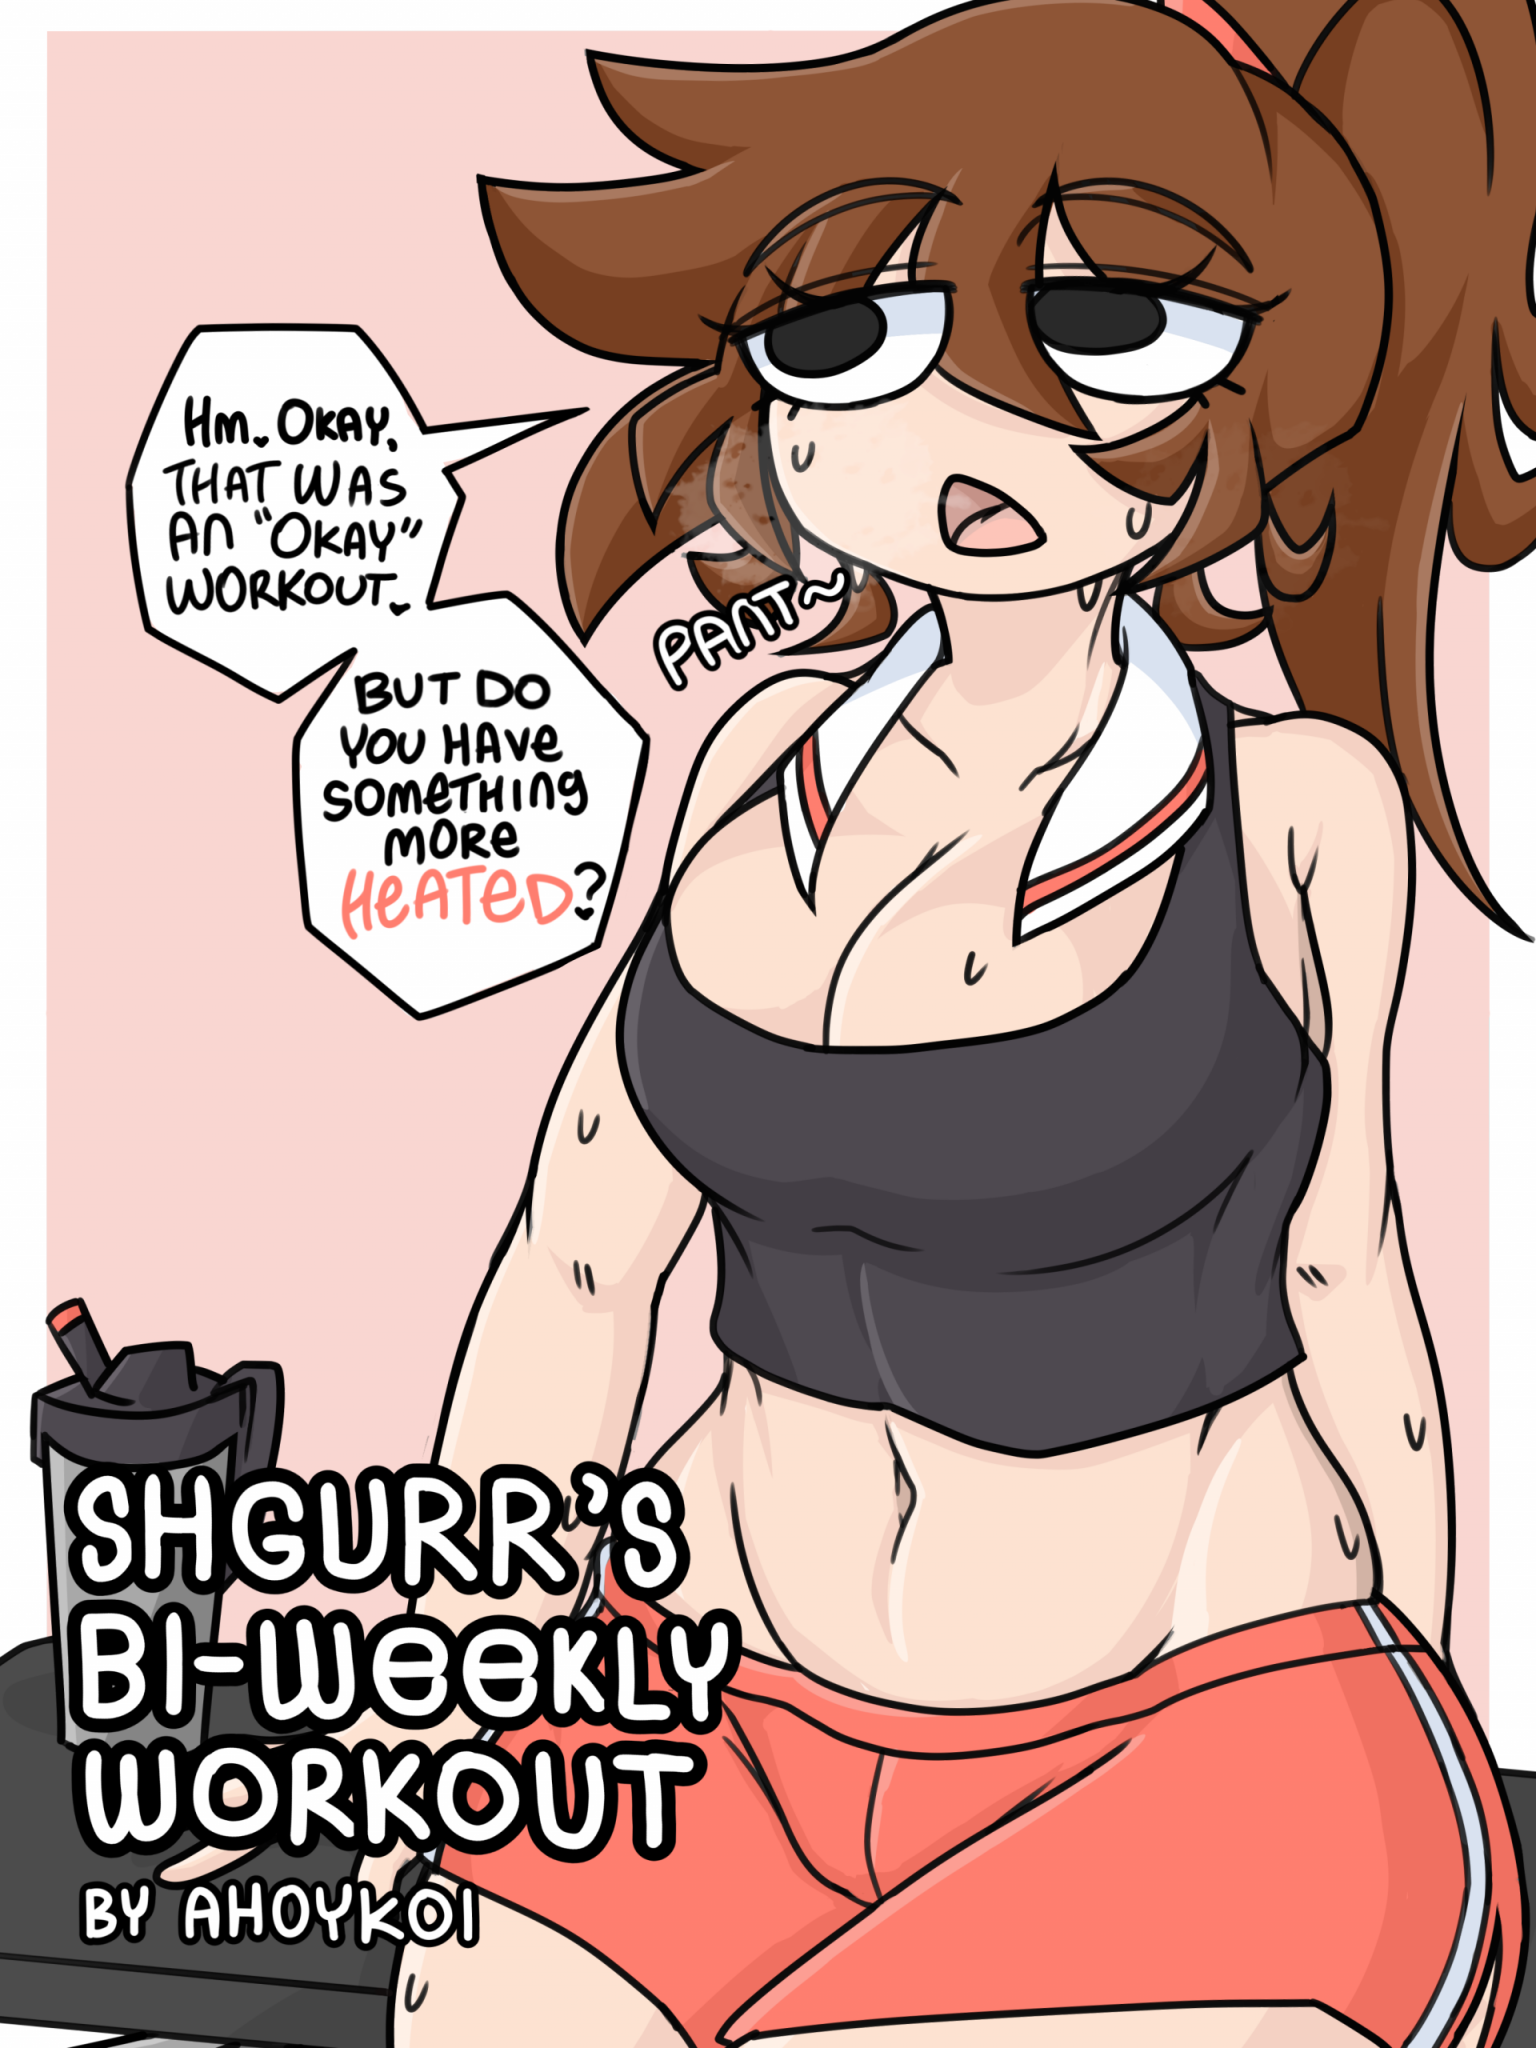 Shgurr’s Bi-Weekly Workout